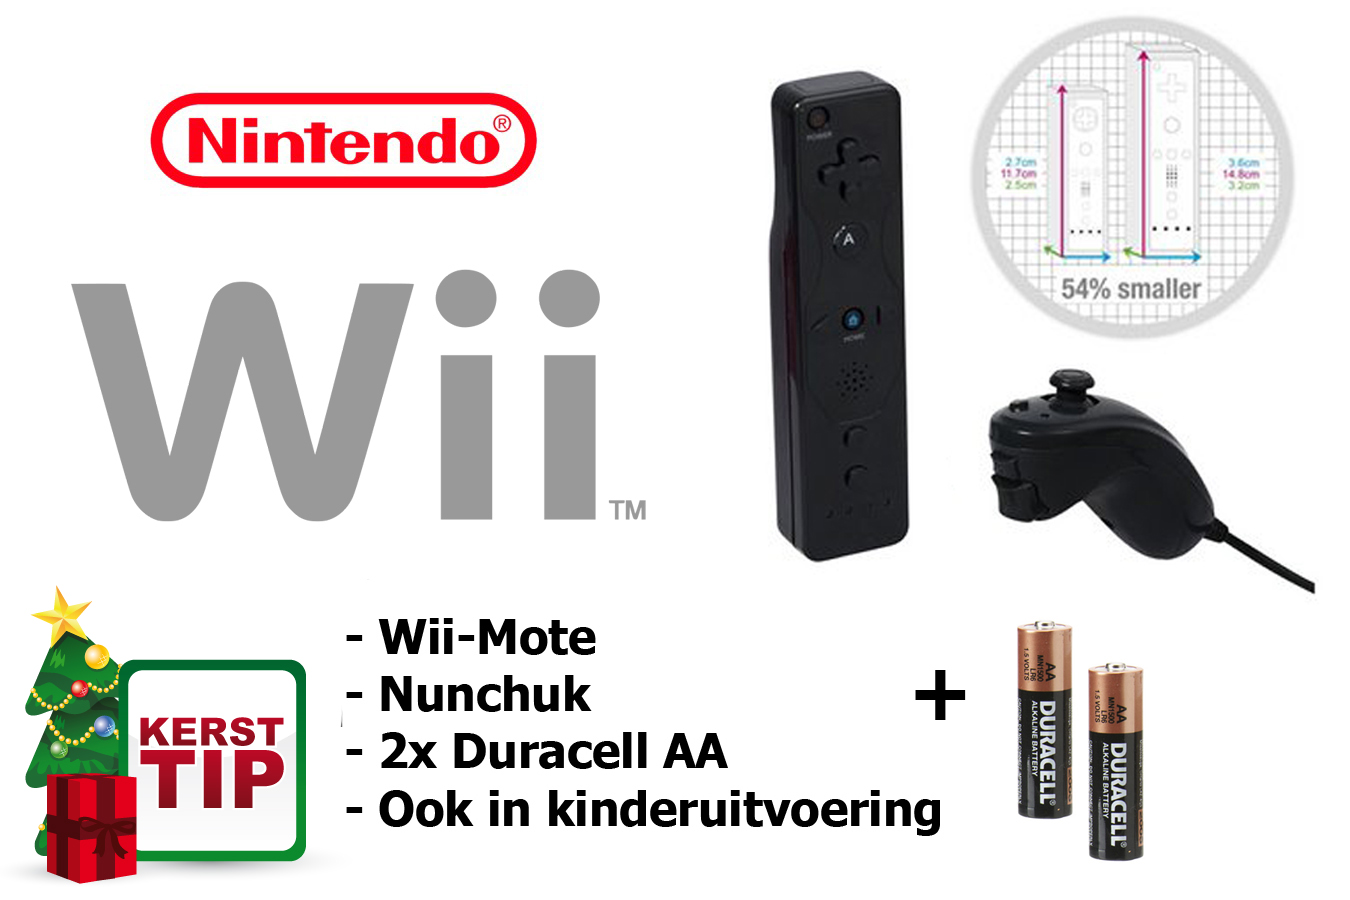 Today's Best Deal - Nintendo Wii Controller